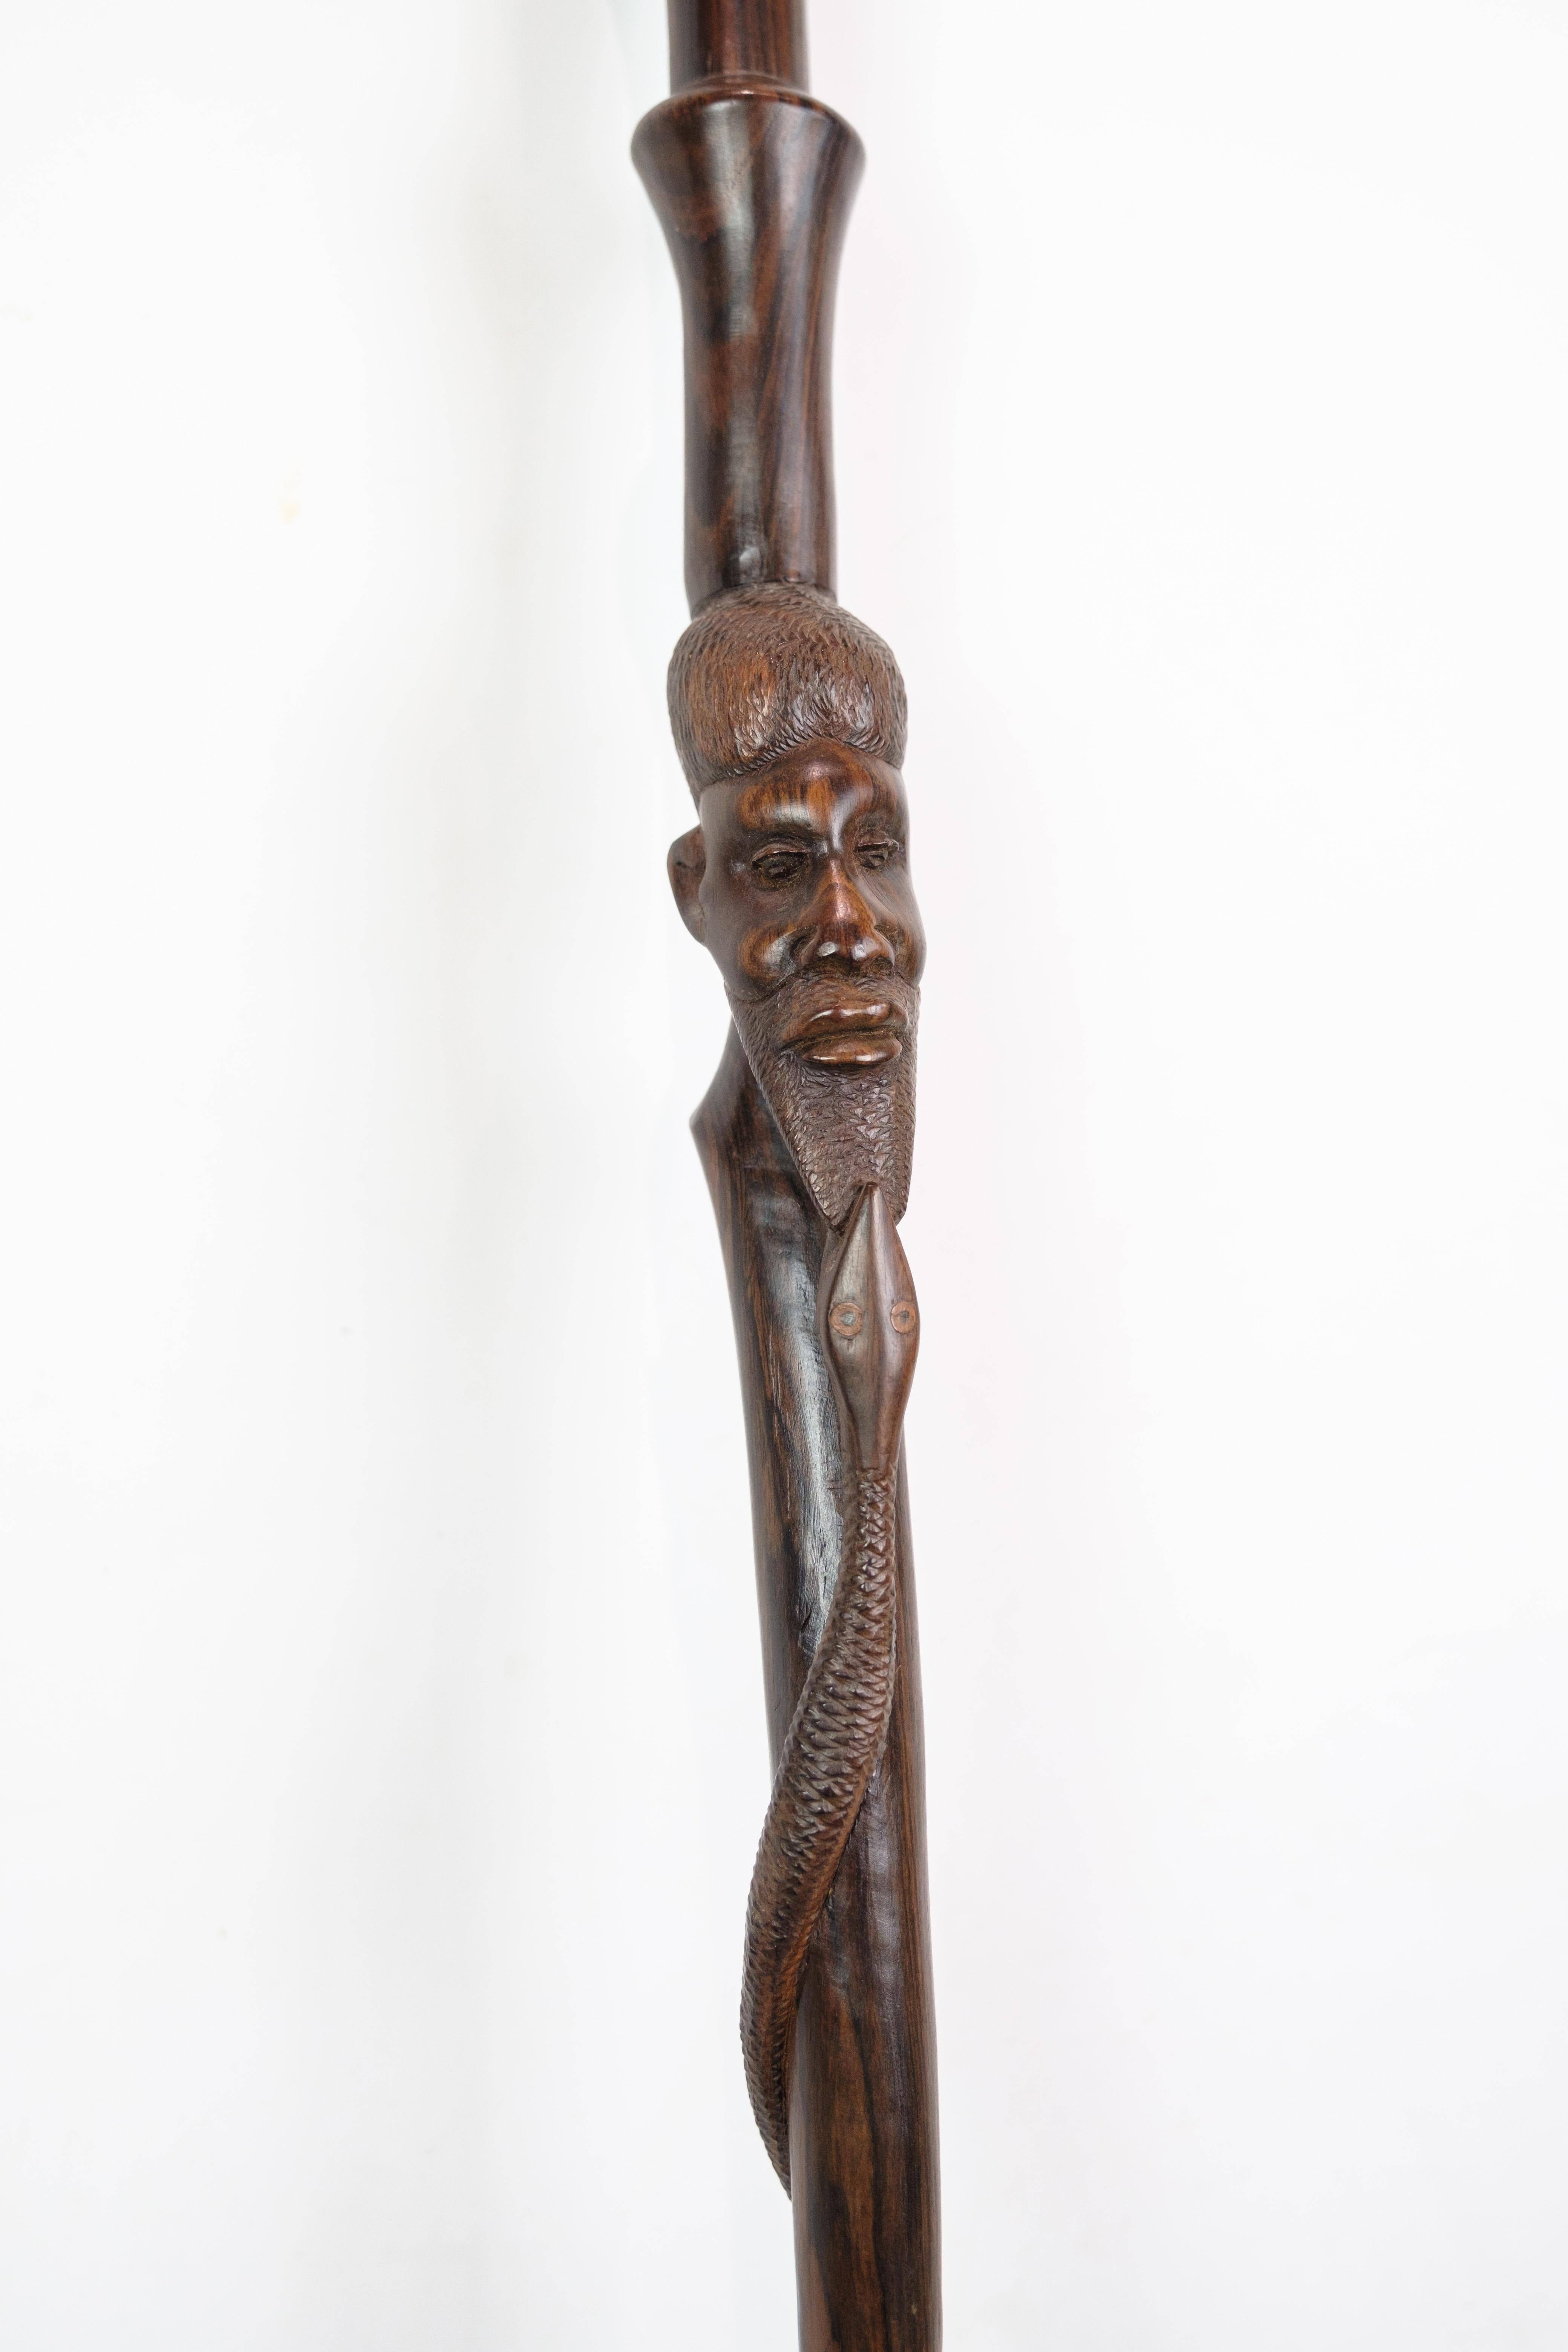 Canne en bois de rose avec un motif sculpté représentant un homme mordu par un serpent, datant des années 1960. Canne de haute qualité.
H : 92